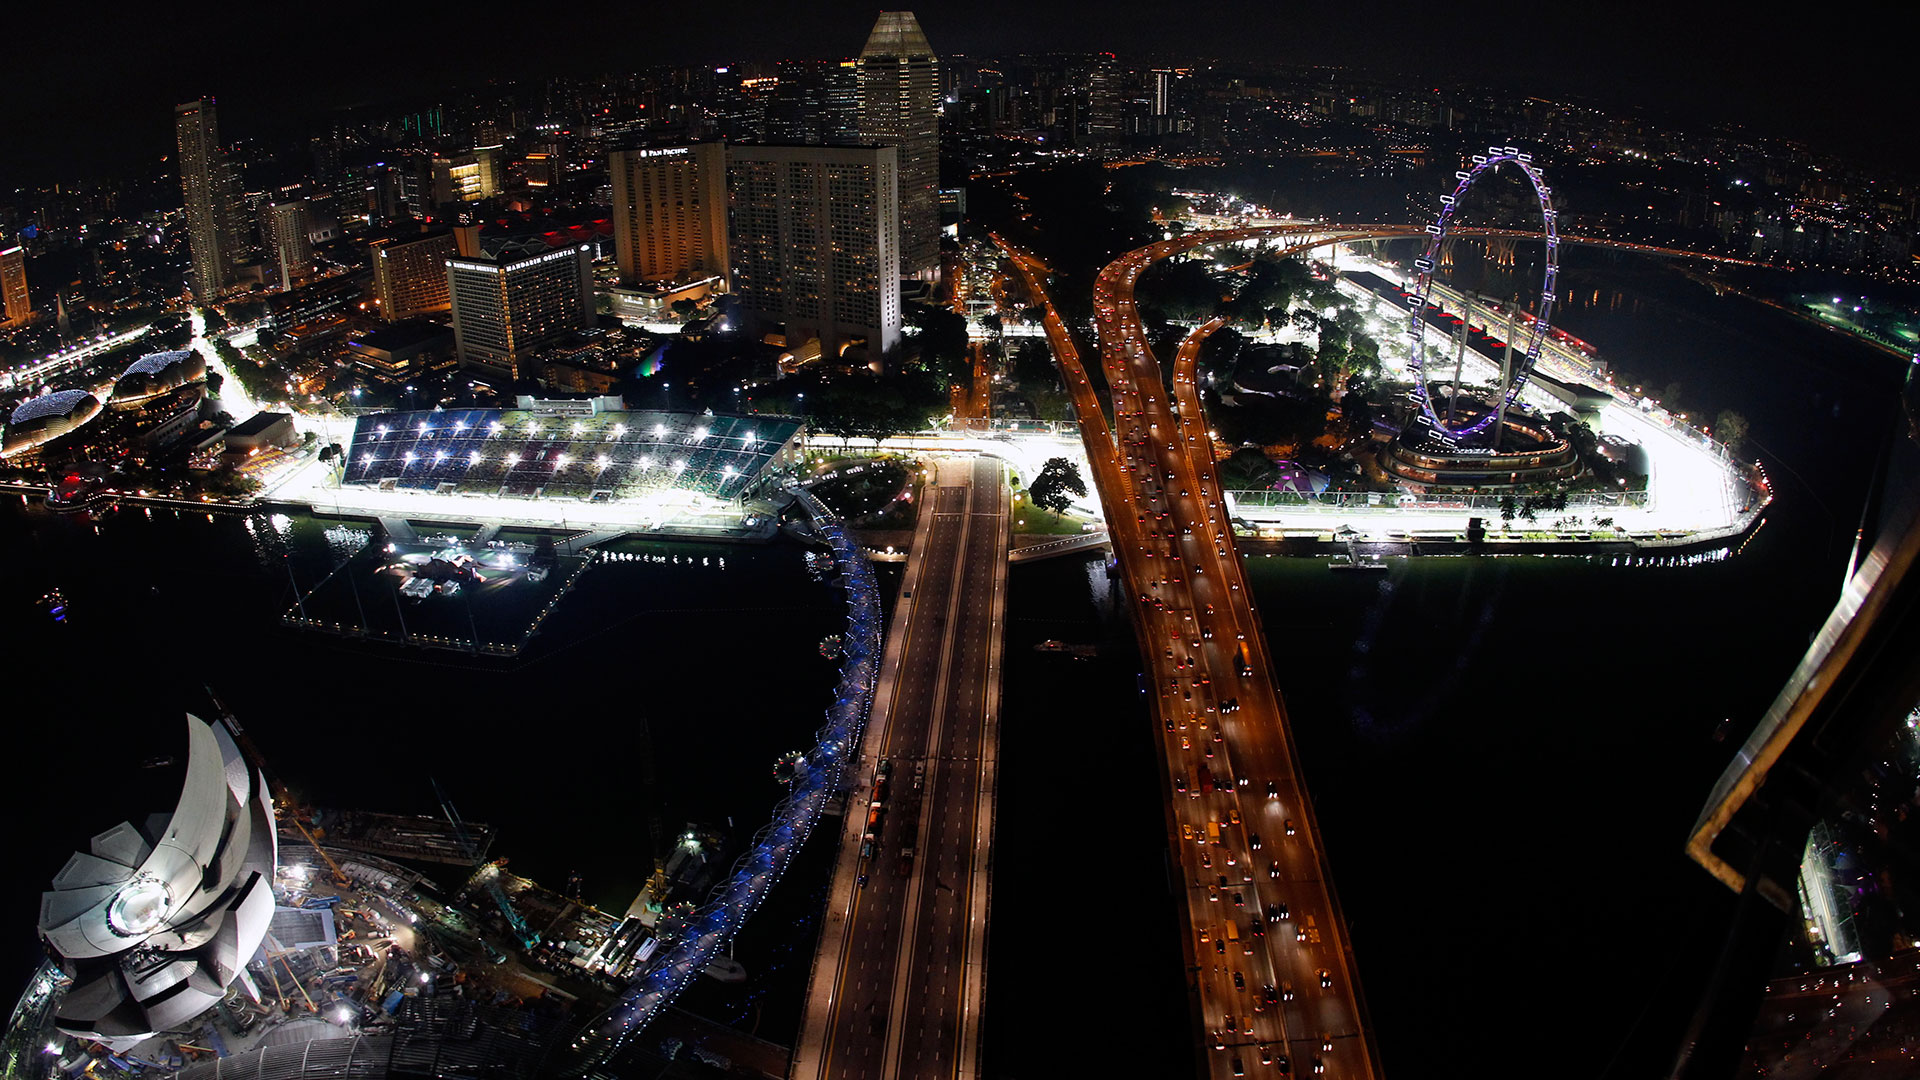 Toàn cảnh đường đua trên phố ở Singapore. Ảnh: F1 Fansite